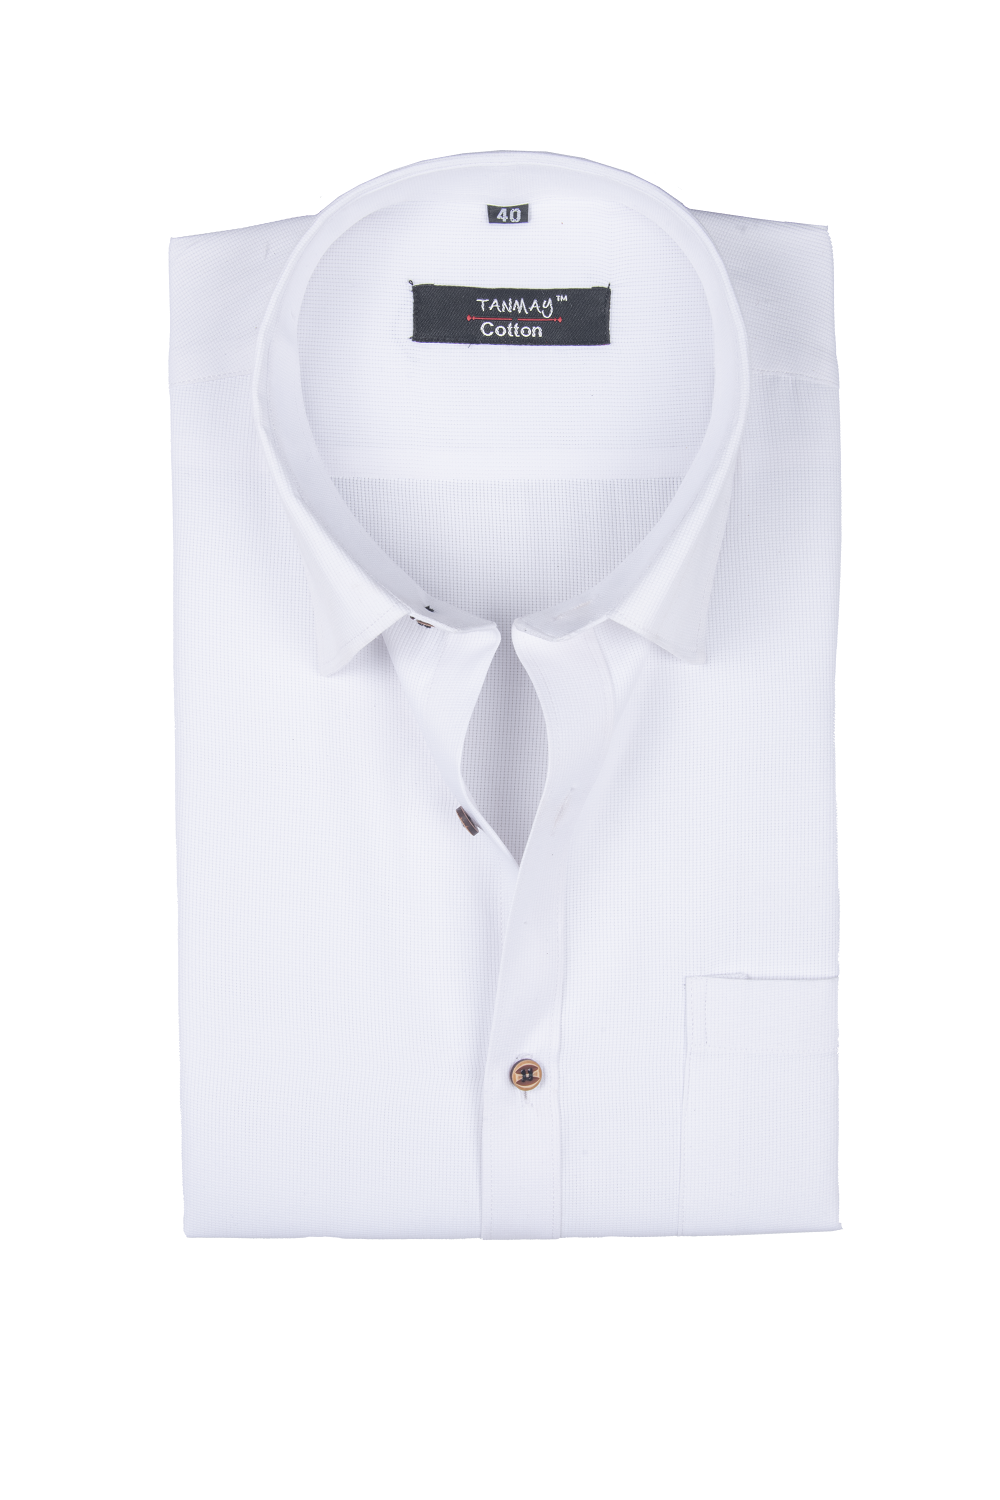 White Color Mercerised Cotton Shirt For Men's